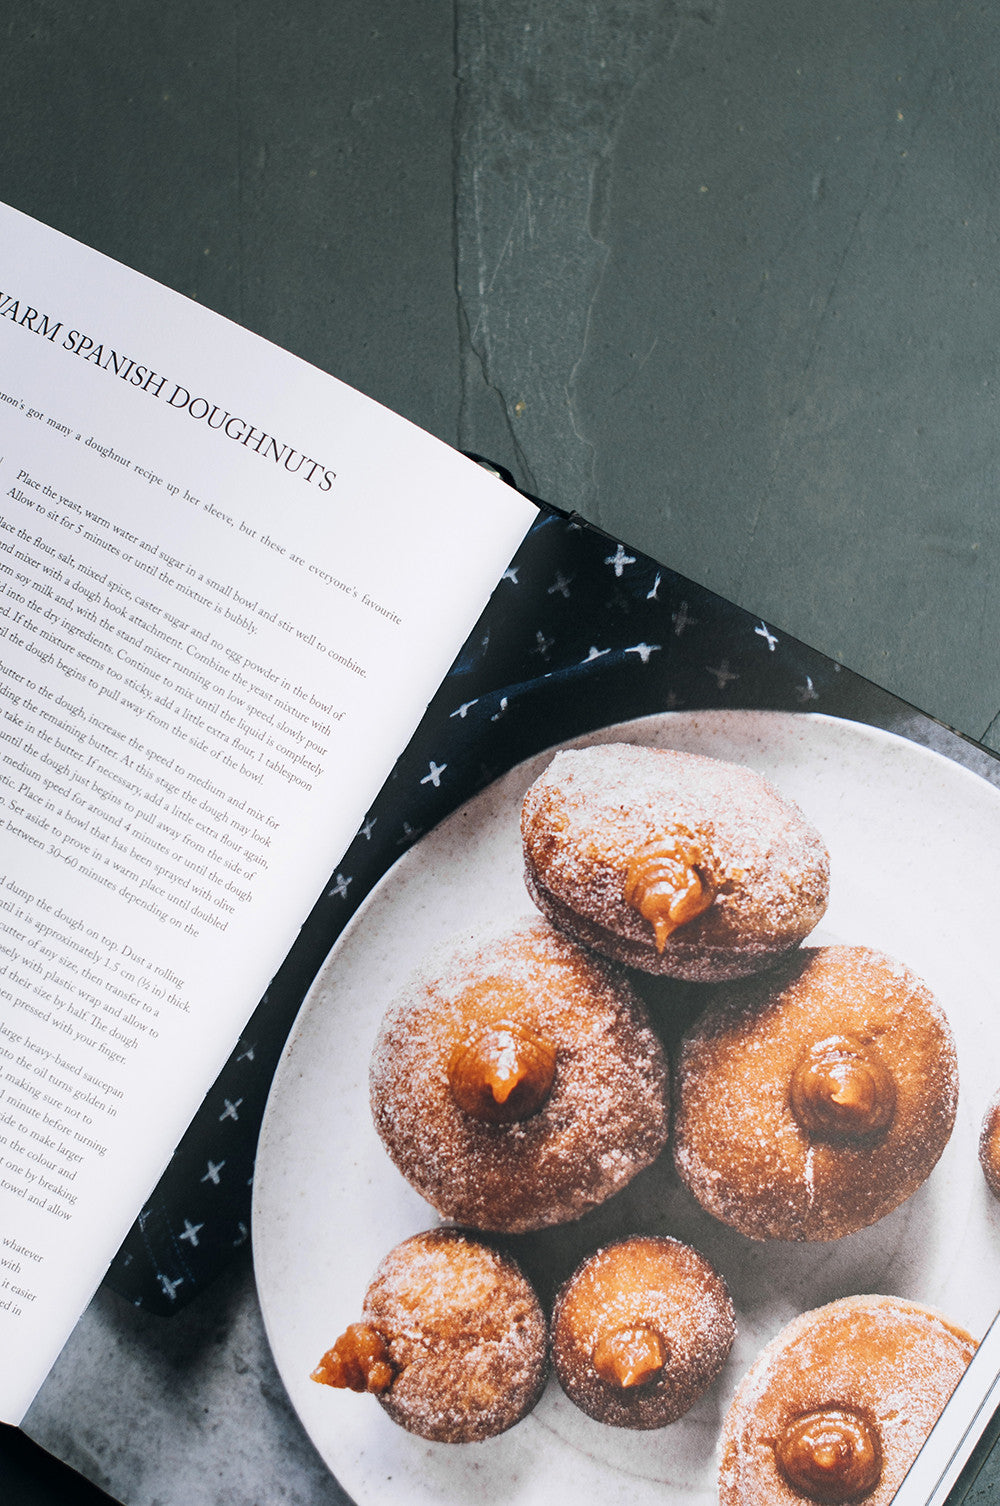 smith & daughters vegan cookbook review